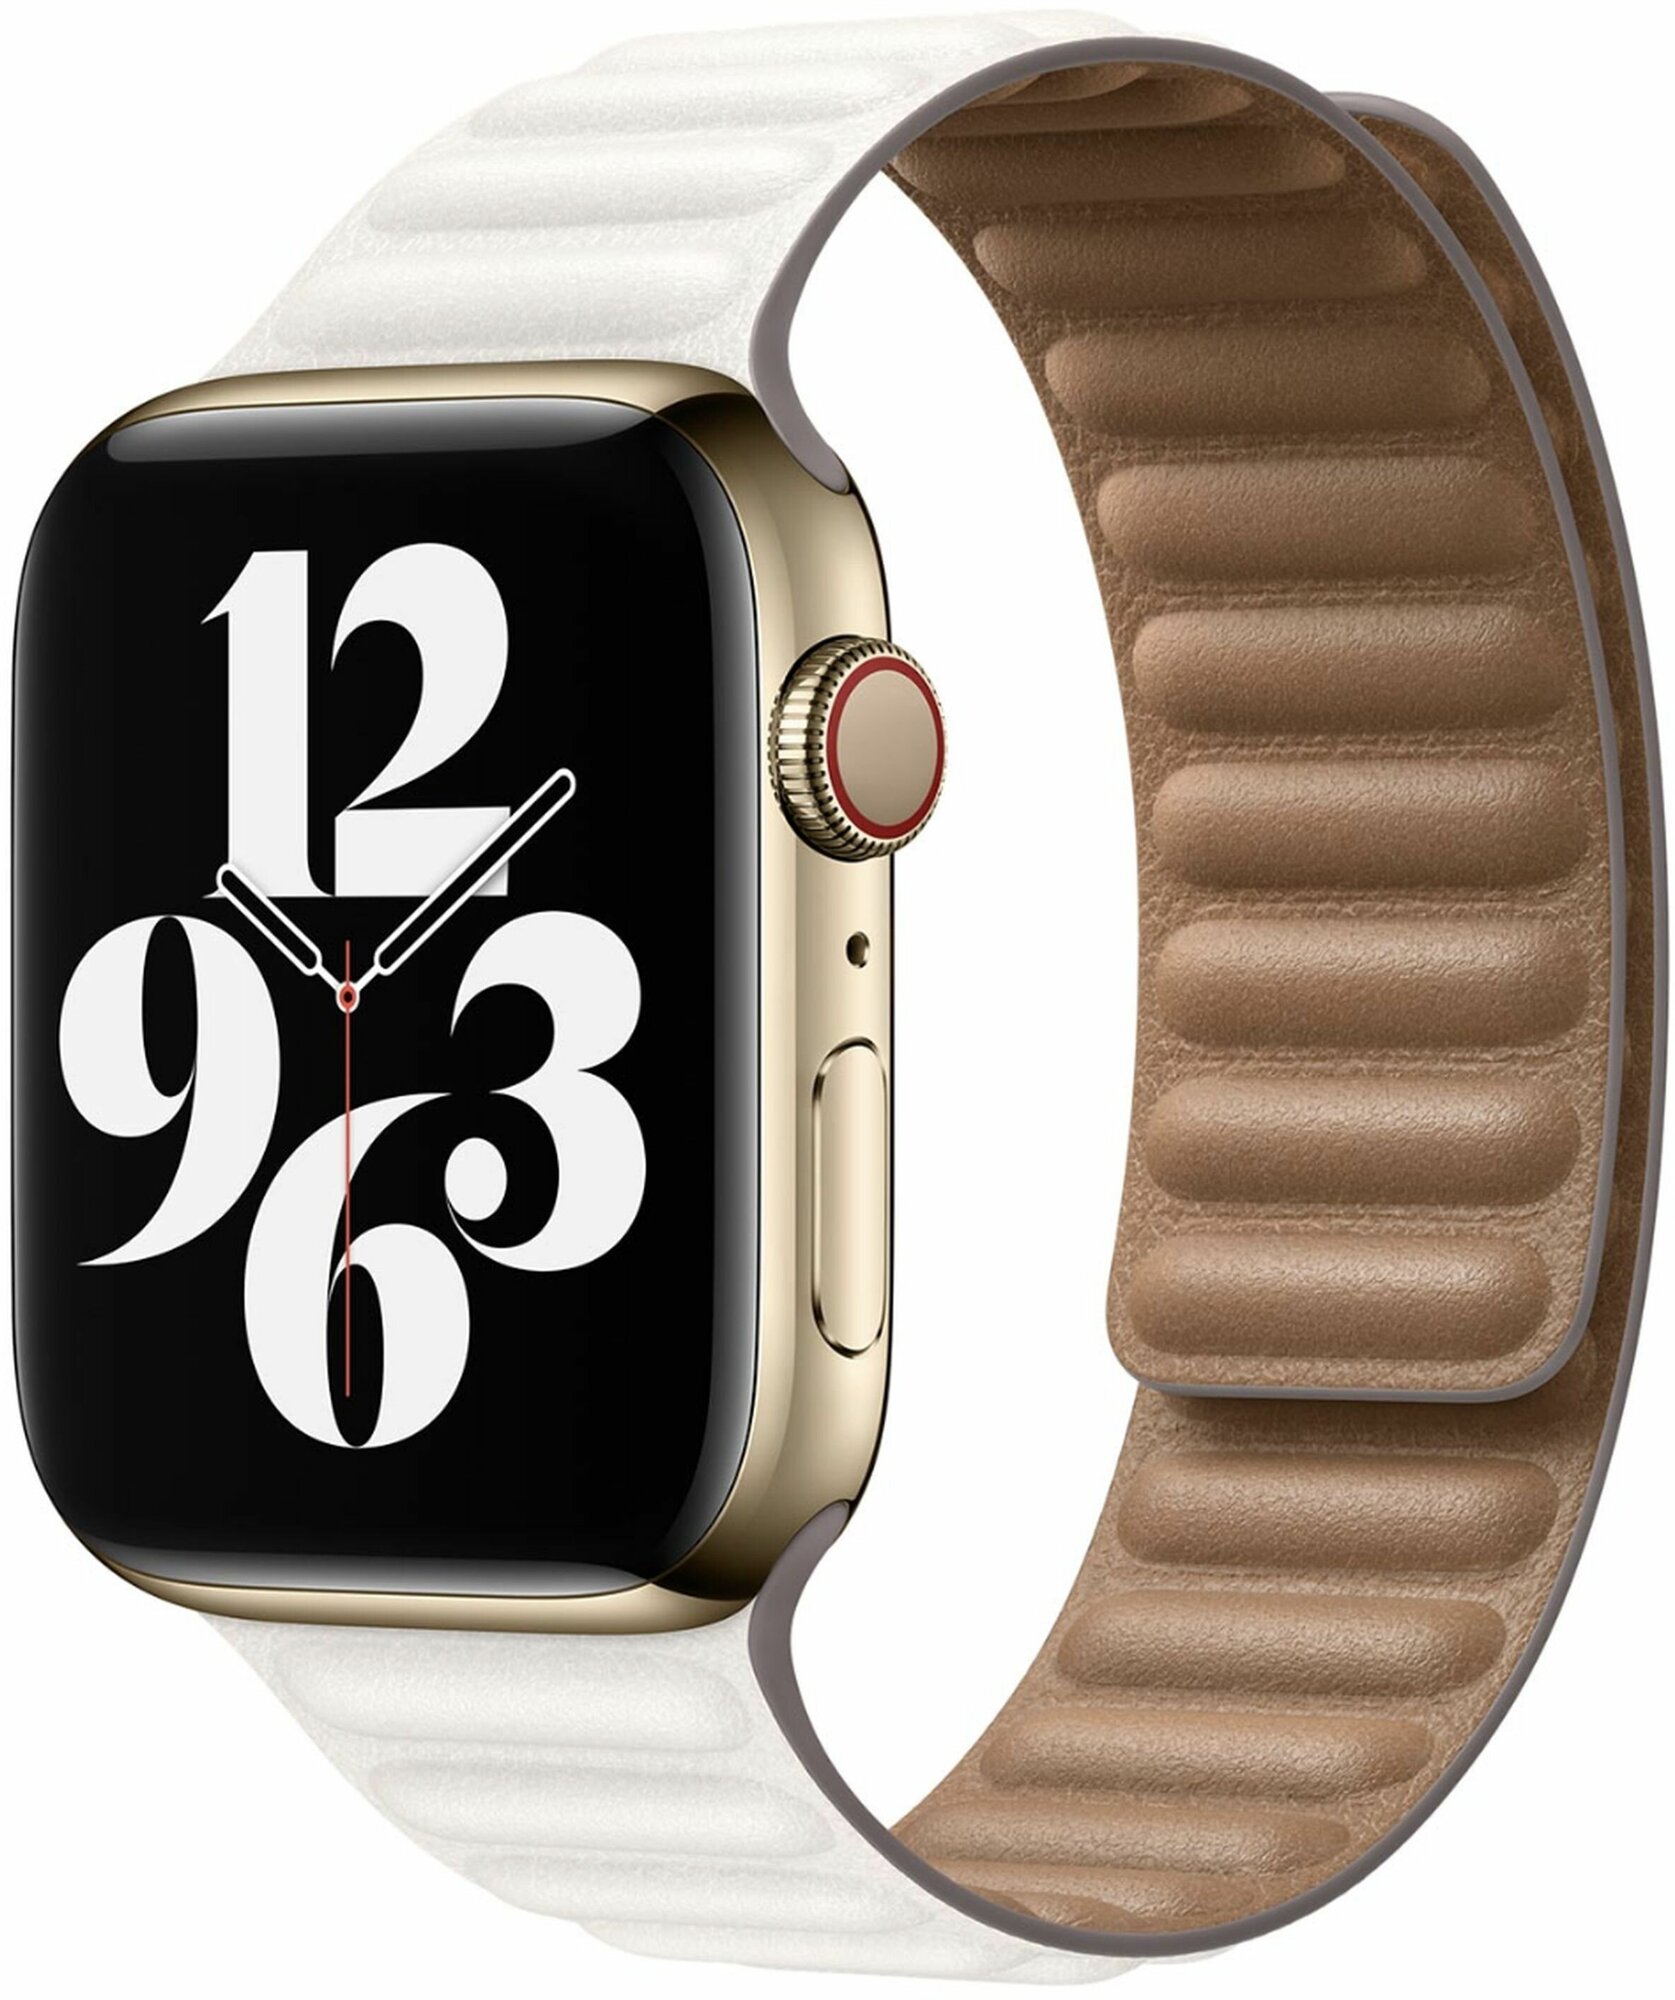 Ремешок Apple Leather Link для Apple Watch Series 3/4/5/6/SE золотой апельсин (MY9D2ZM/A) 40мм - фото №4